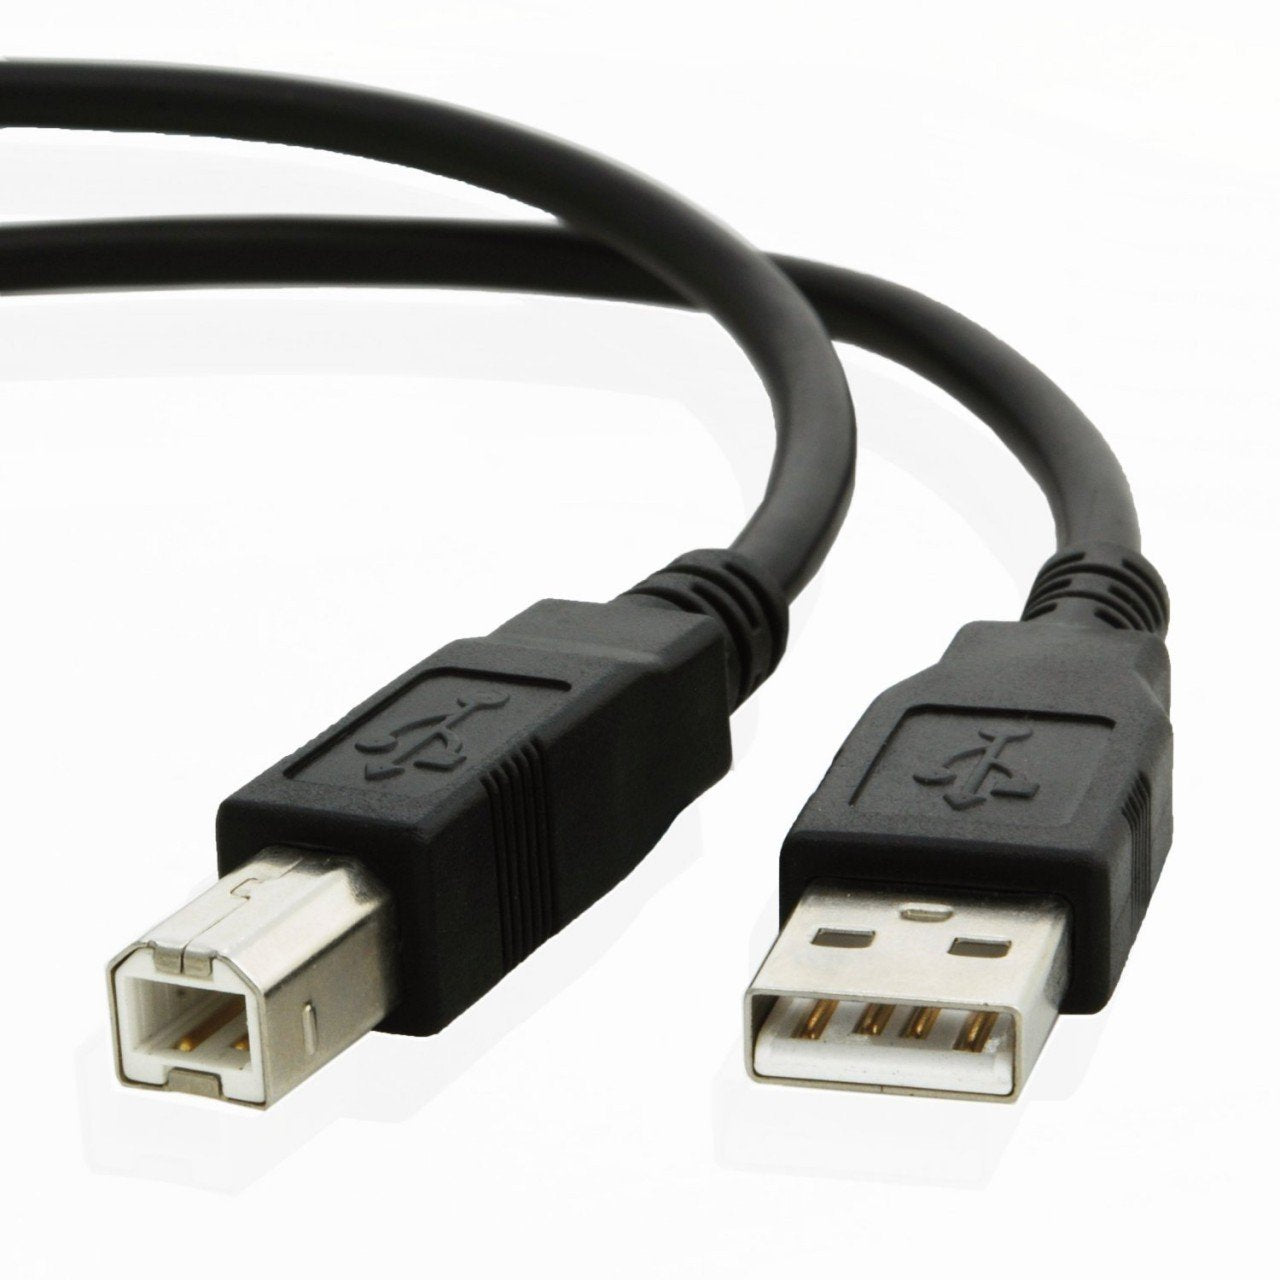 USB cable for Hp DESKJET 2630